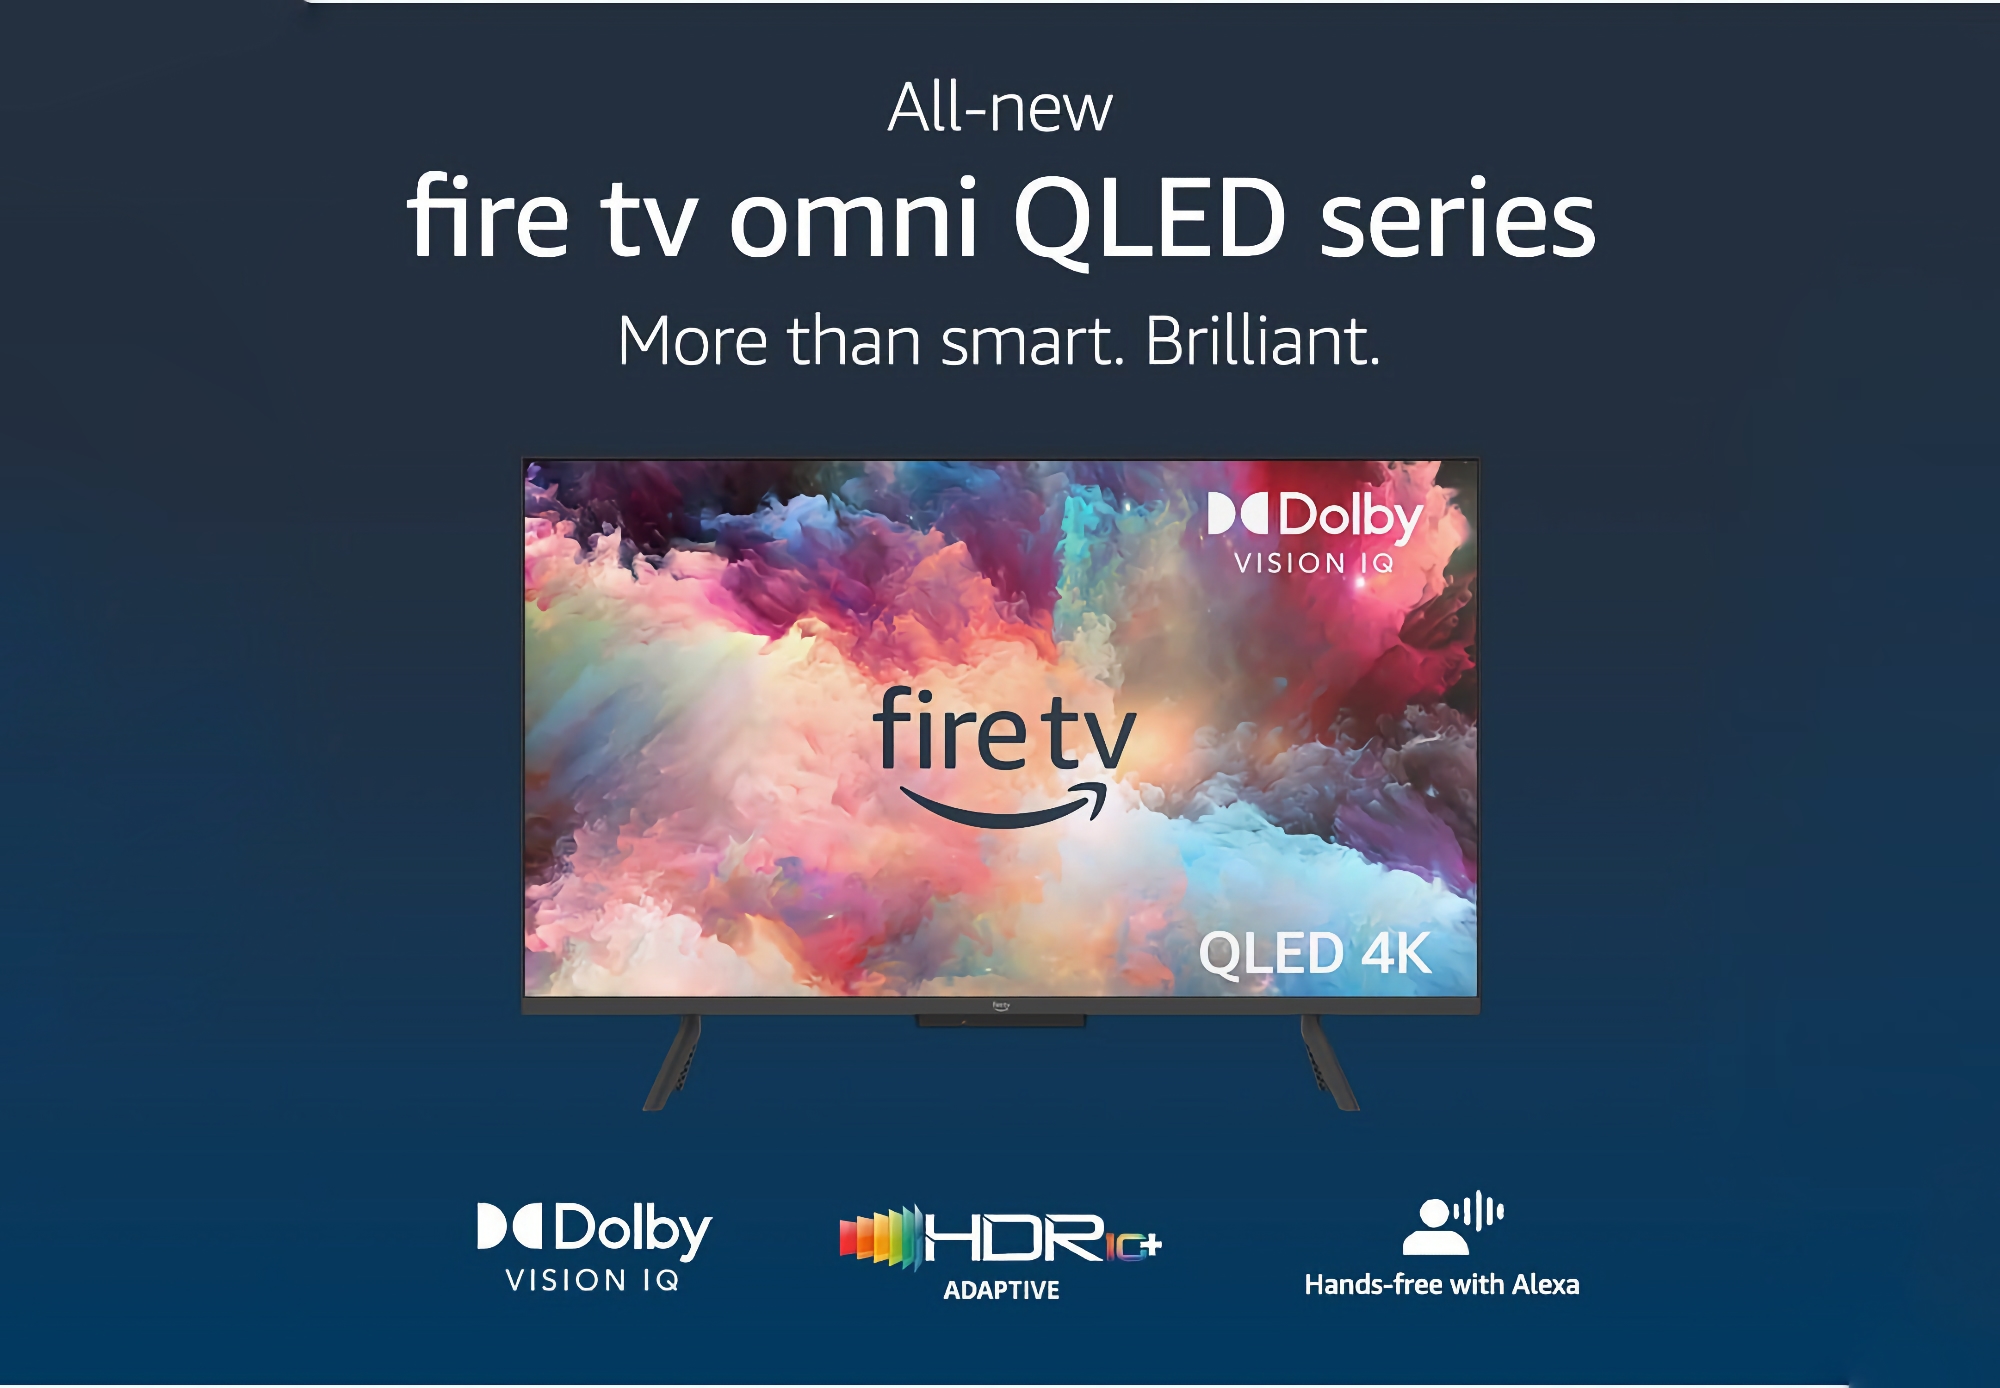 Amazon ujawnia nowe modele Fire TV Omni QLED: inteligentne telewizory z wyświetlaczami o przekątnej 43-55 cali, obsługą Alexy i cenami od 449 dolarów.